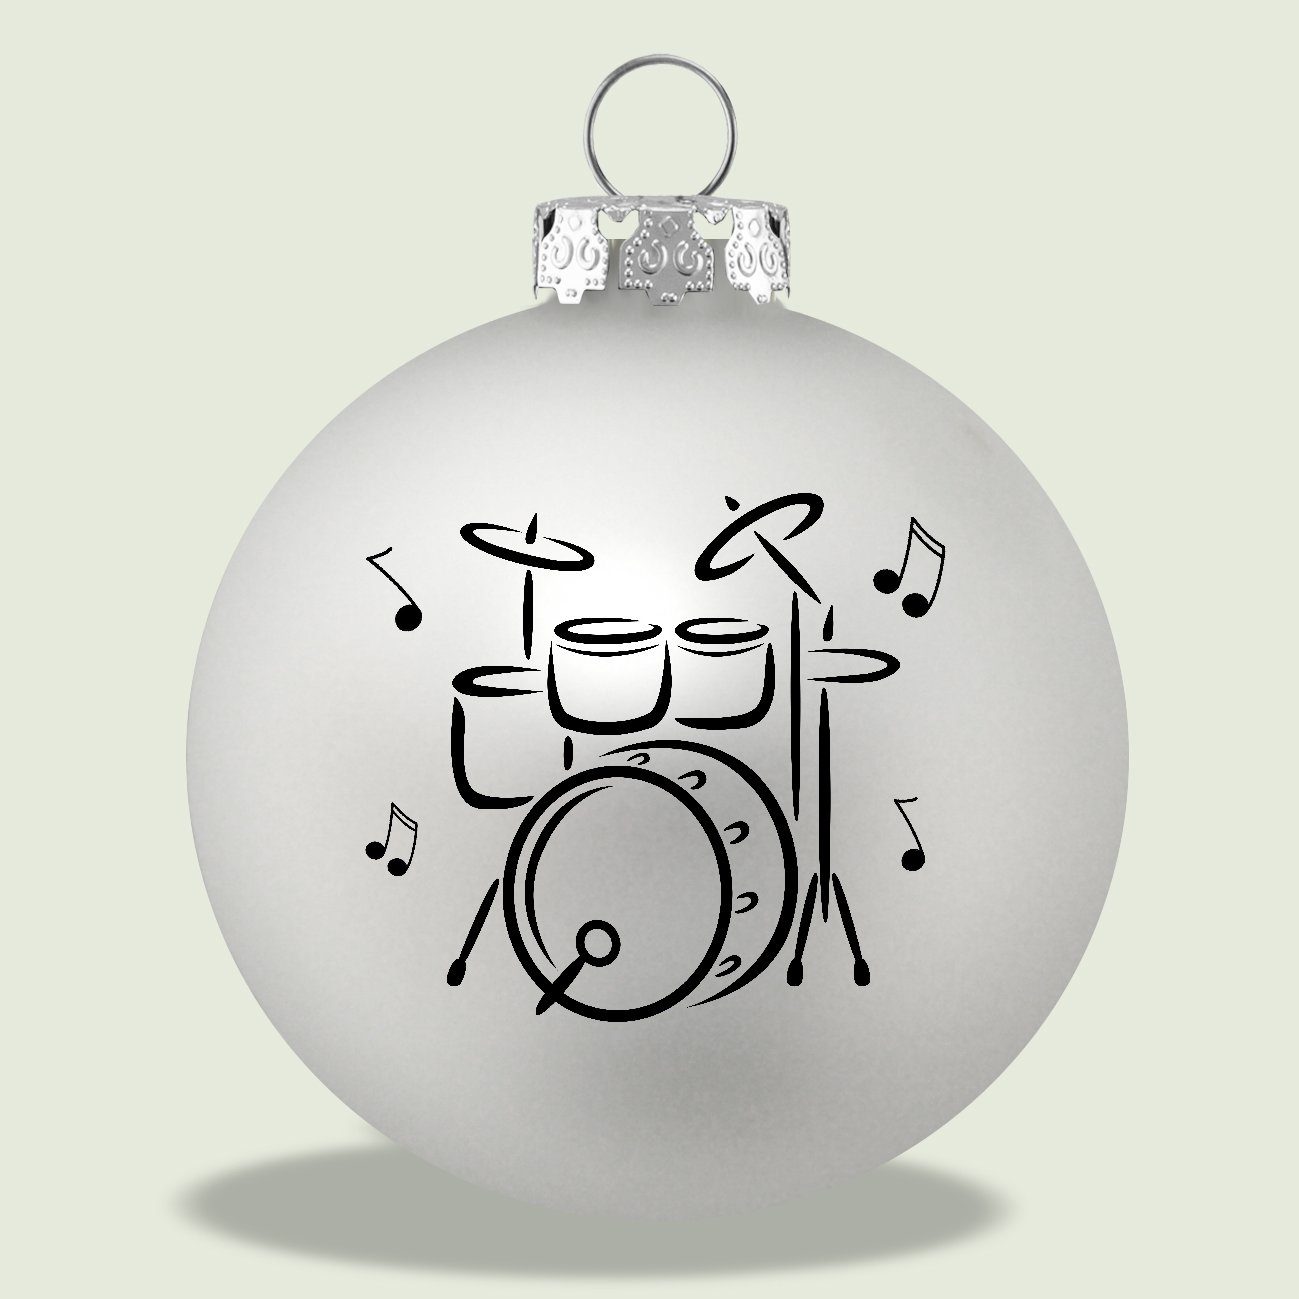 Glas mit 3er-Set aus Schlagzeug-Druck, Musikboutique silber schwarzem Weihnachtsbaumkugel, Farbe